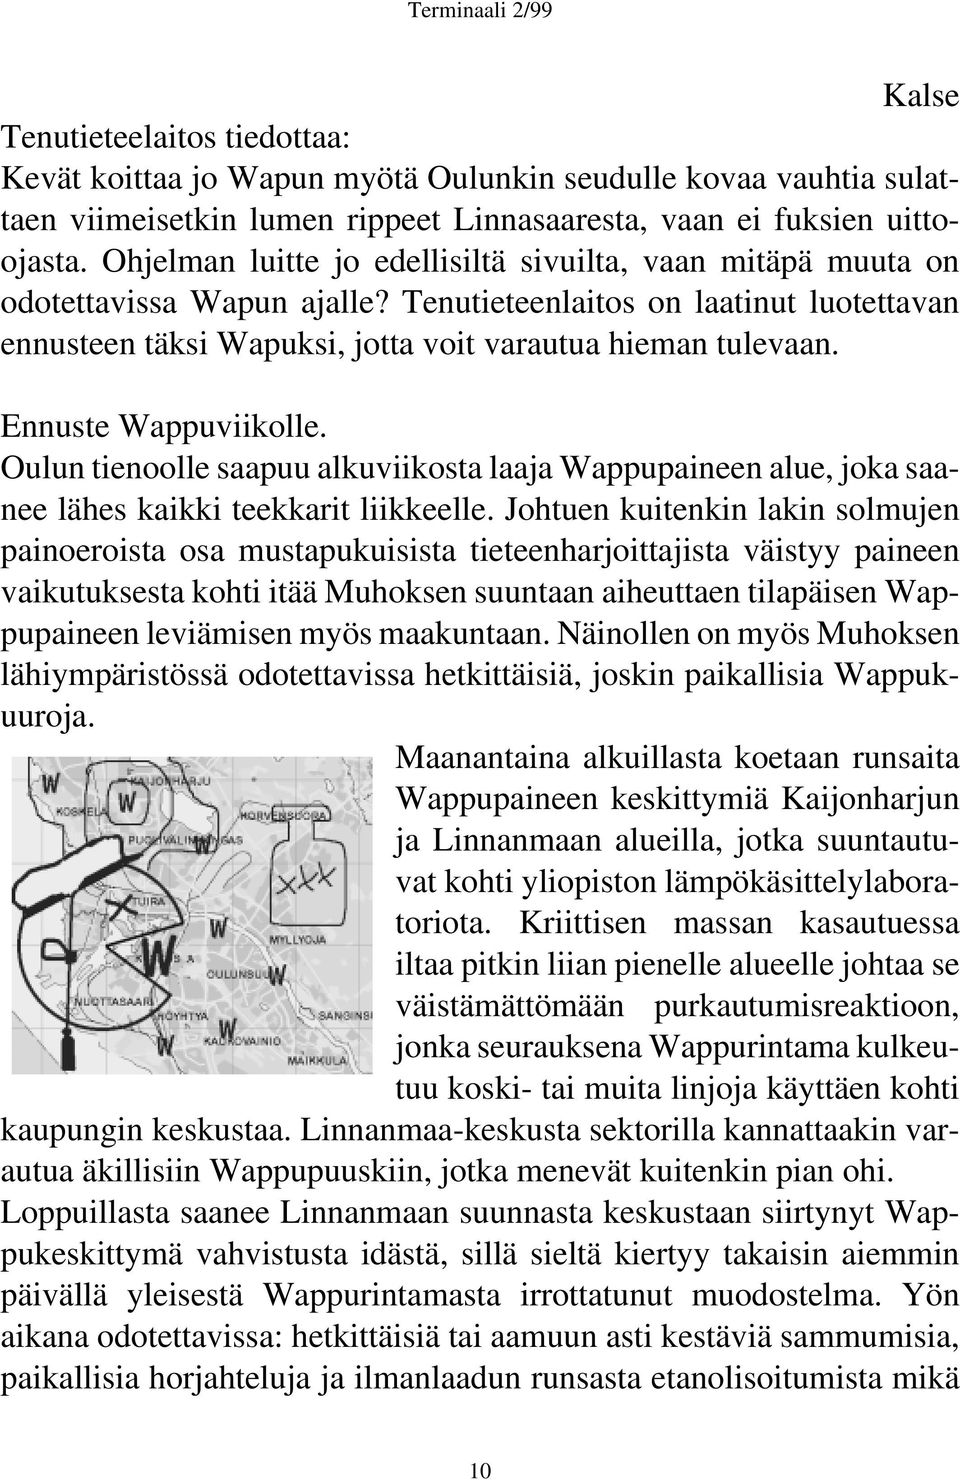 Ennuste Wappuviikolle. Oulun tienoolle saapuu alkuviikosta laaja Wappupaineen alue, joka saanee lähes kaikki teekkarit liikkeelle.